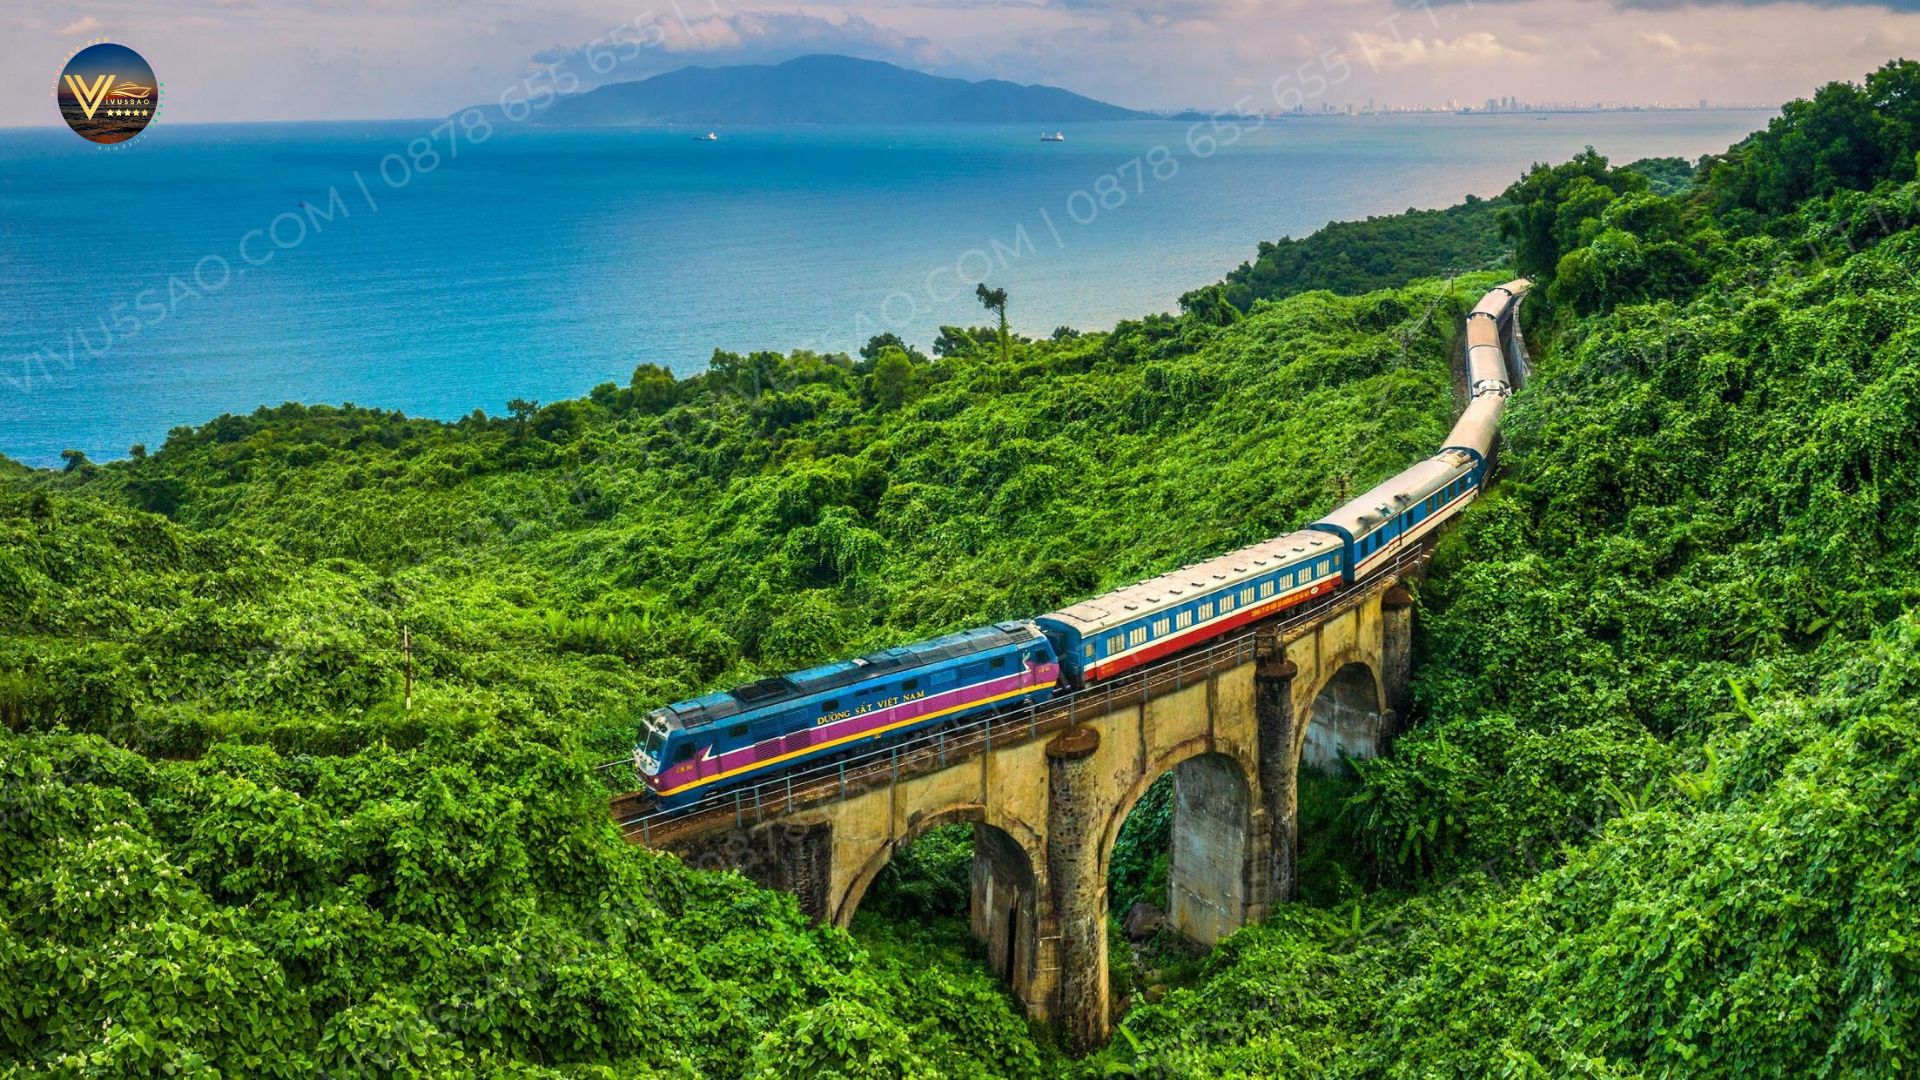 Tuyến tàu hỏa Hà Nội - Đà Nẵng chất lượng cao SE19/SE20 sắp đi vào hoạt động